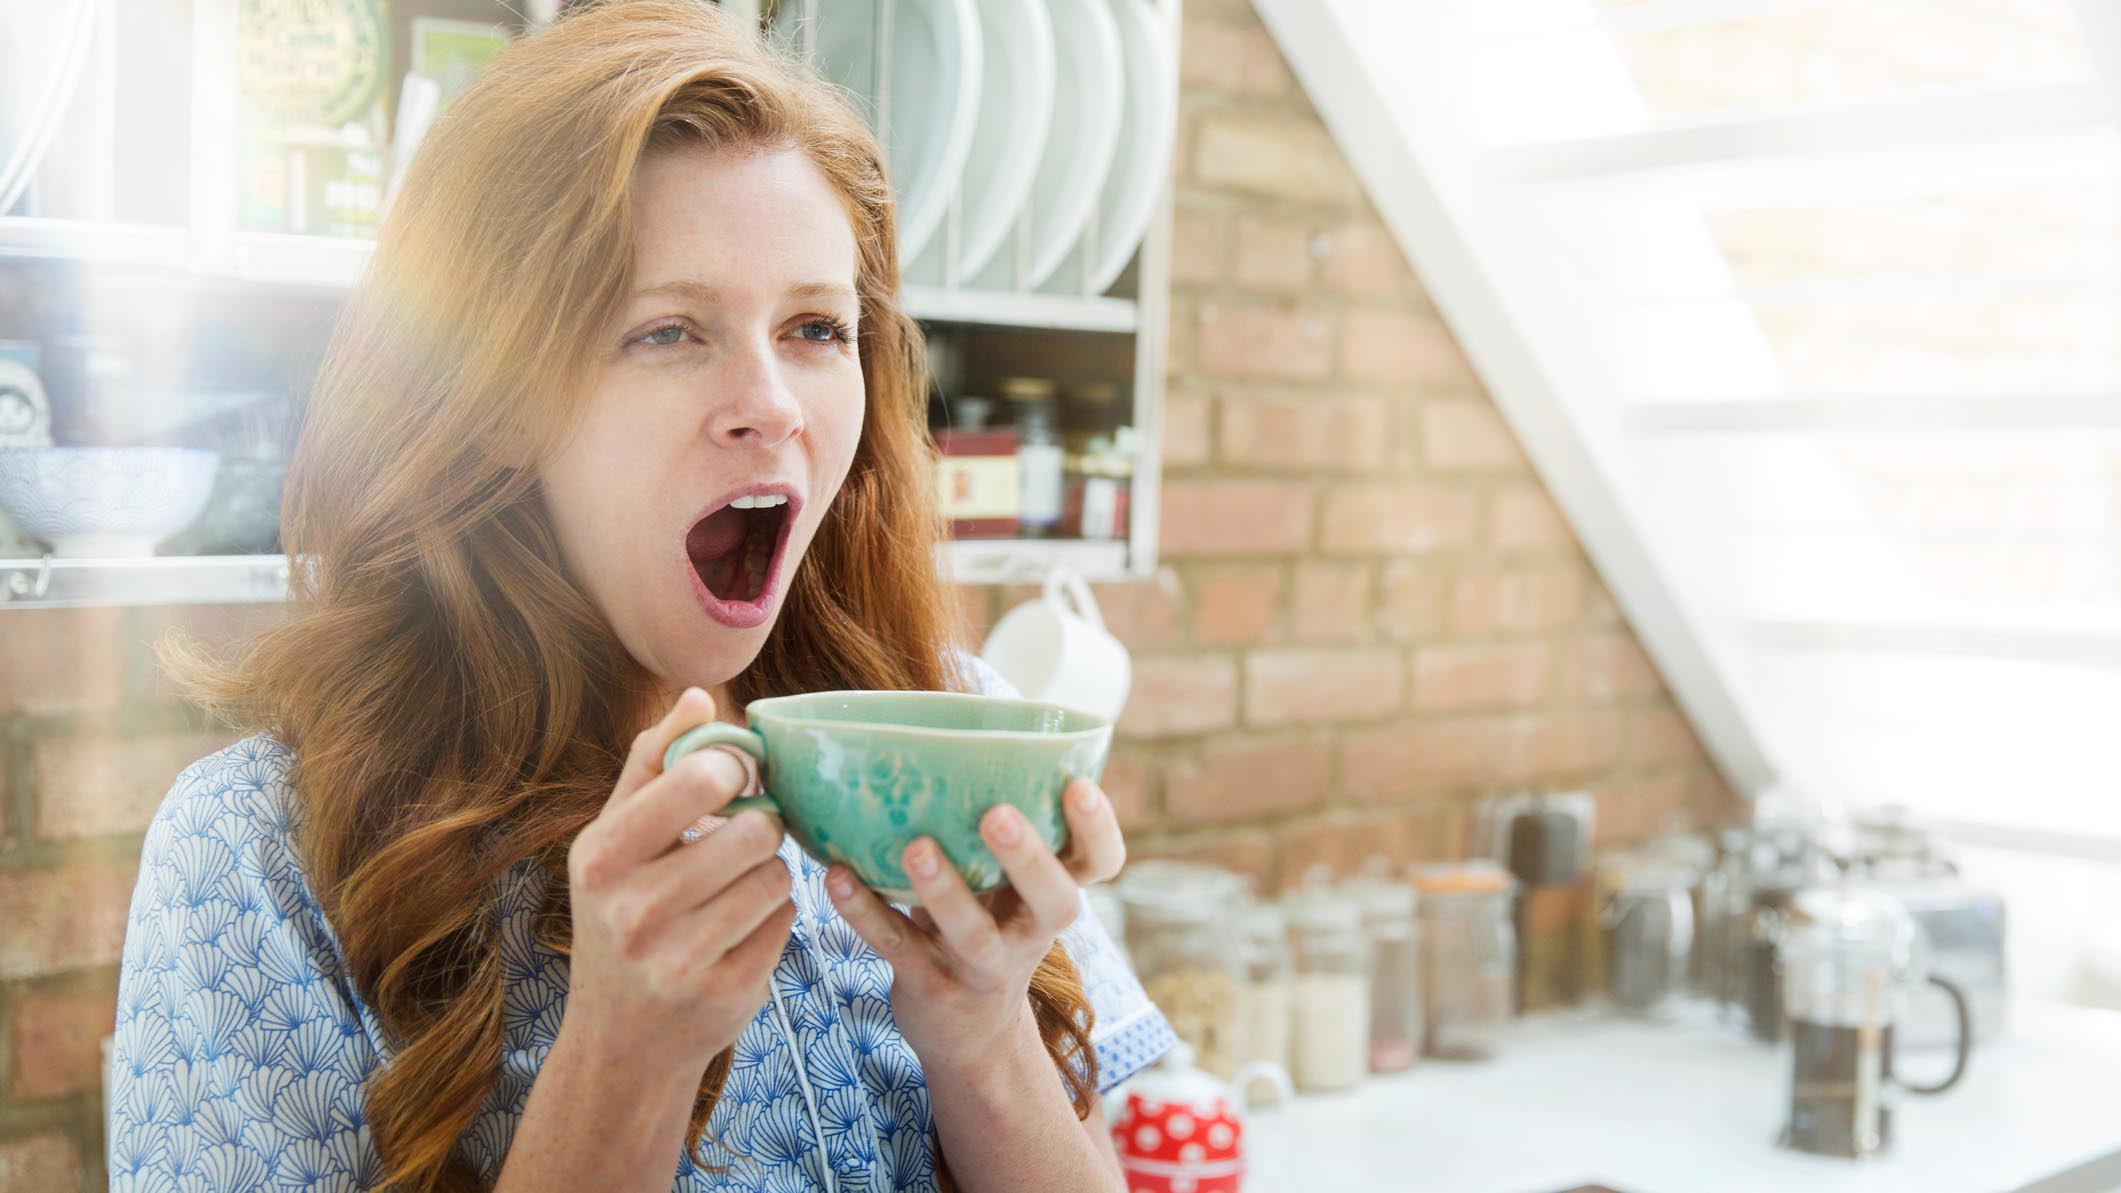 Зевающая женщина с рыжими волосами следует правилу сна 10-3-2-1-0, не употребляя кофеин за 10 часов до сна.